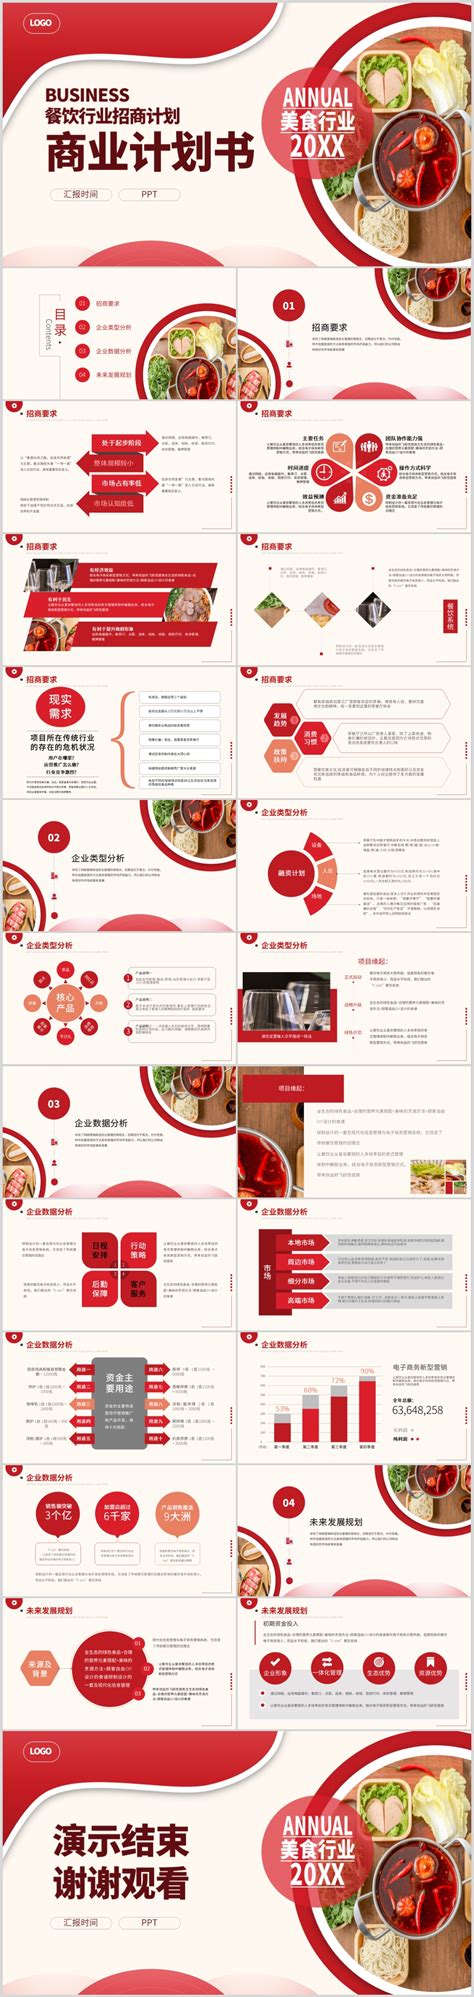 高端大气商务韩国餐厅韩式餐饮招商加盟PPT动态模板-PPT牛模板网